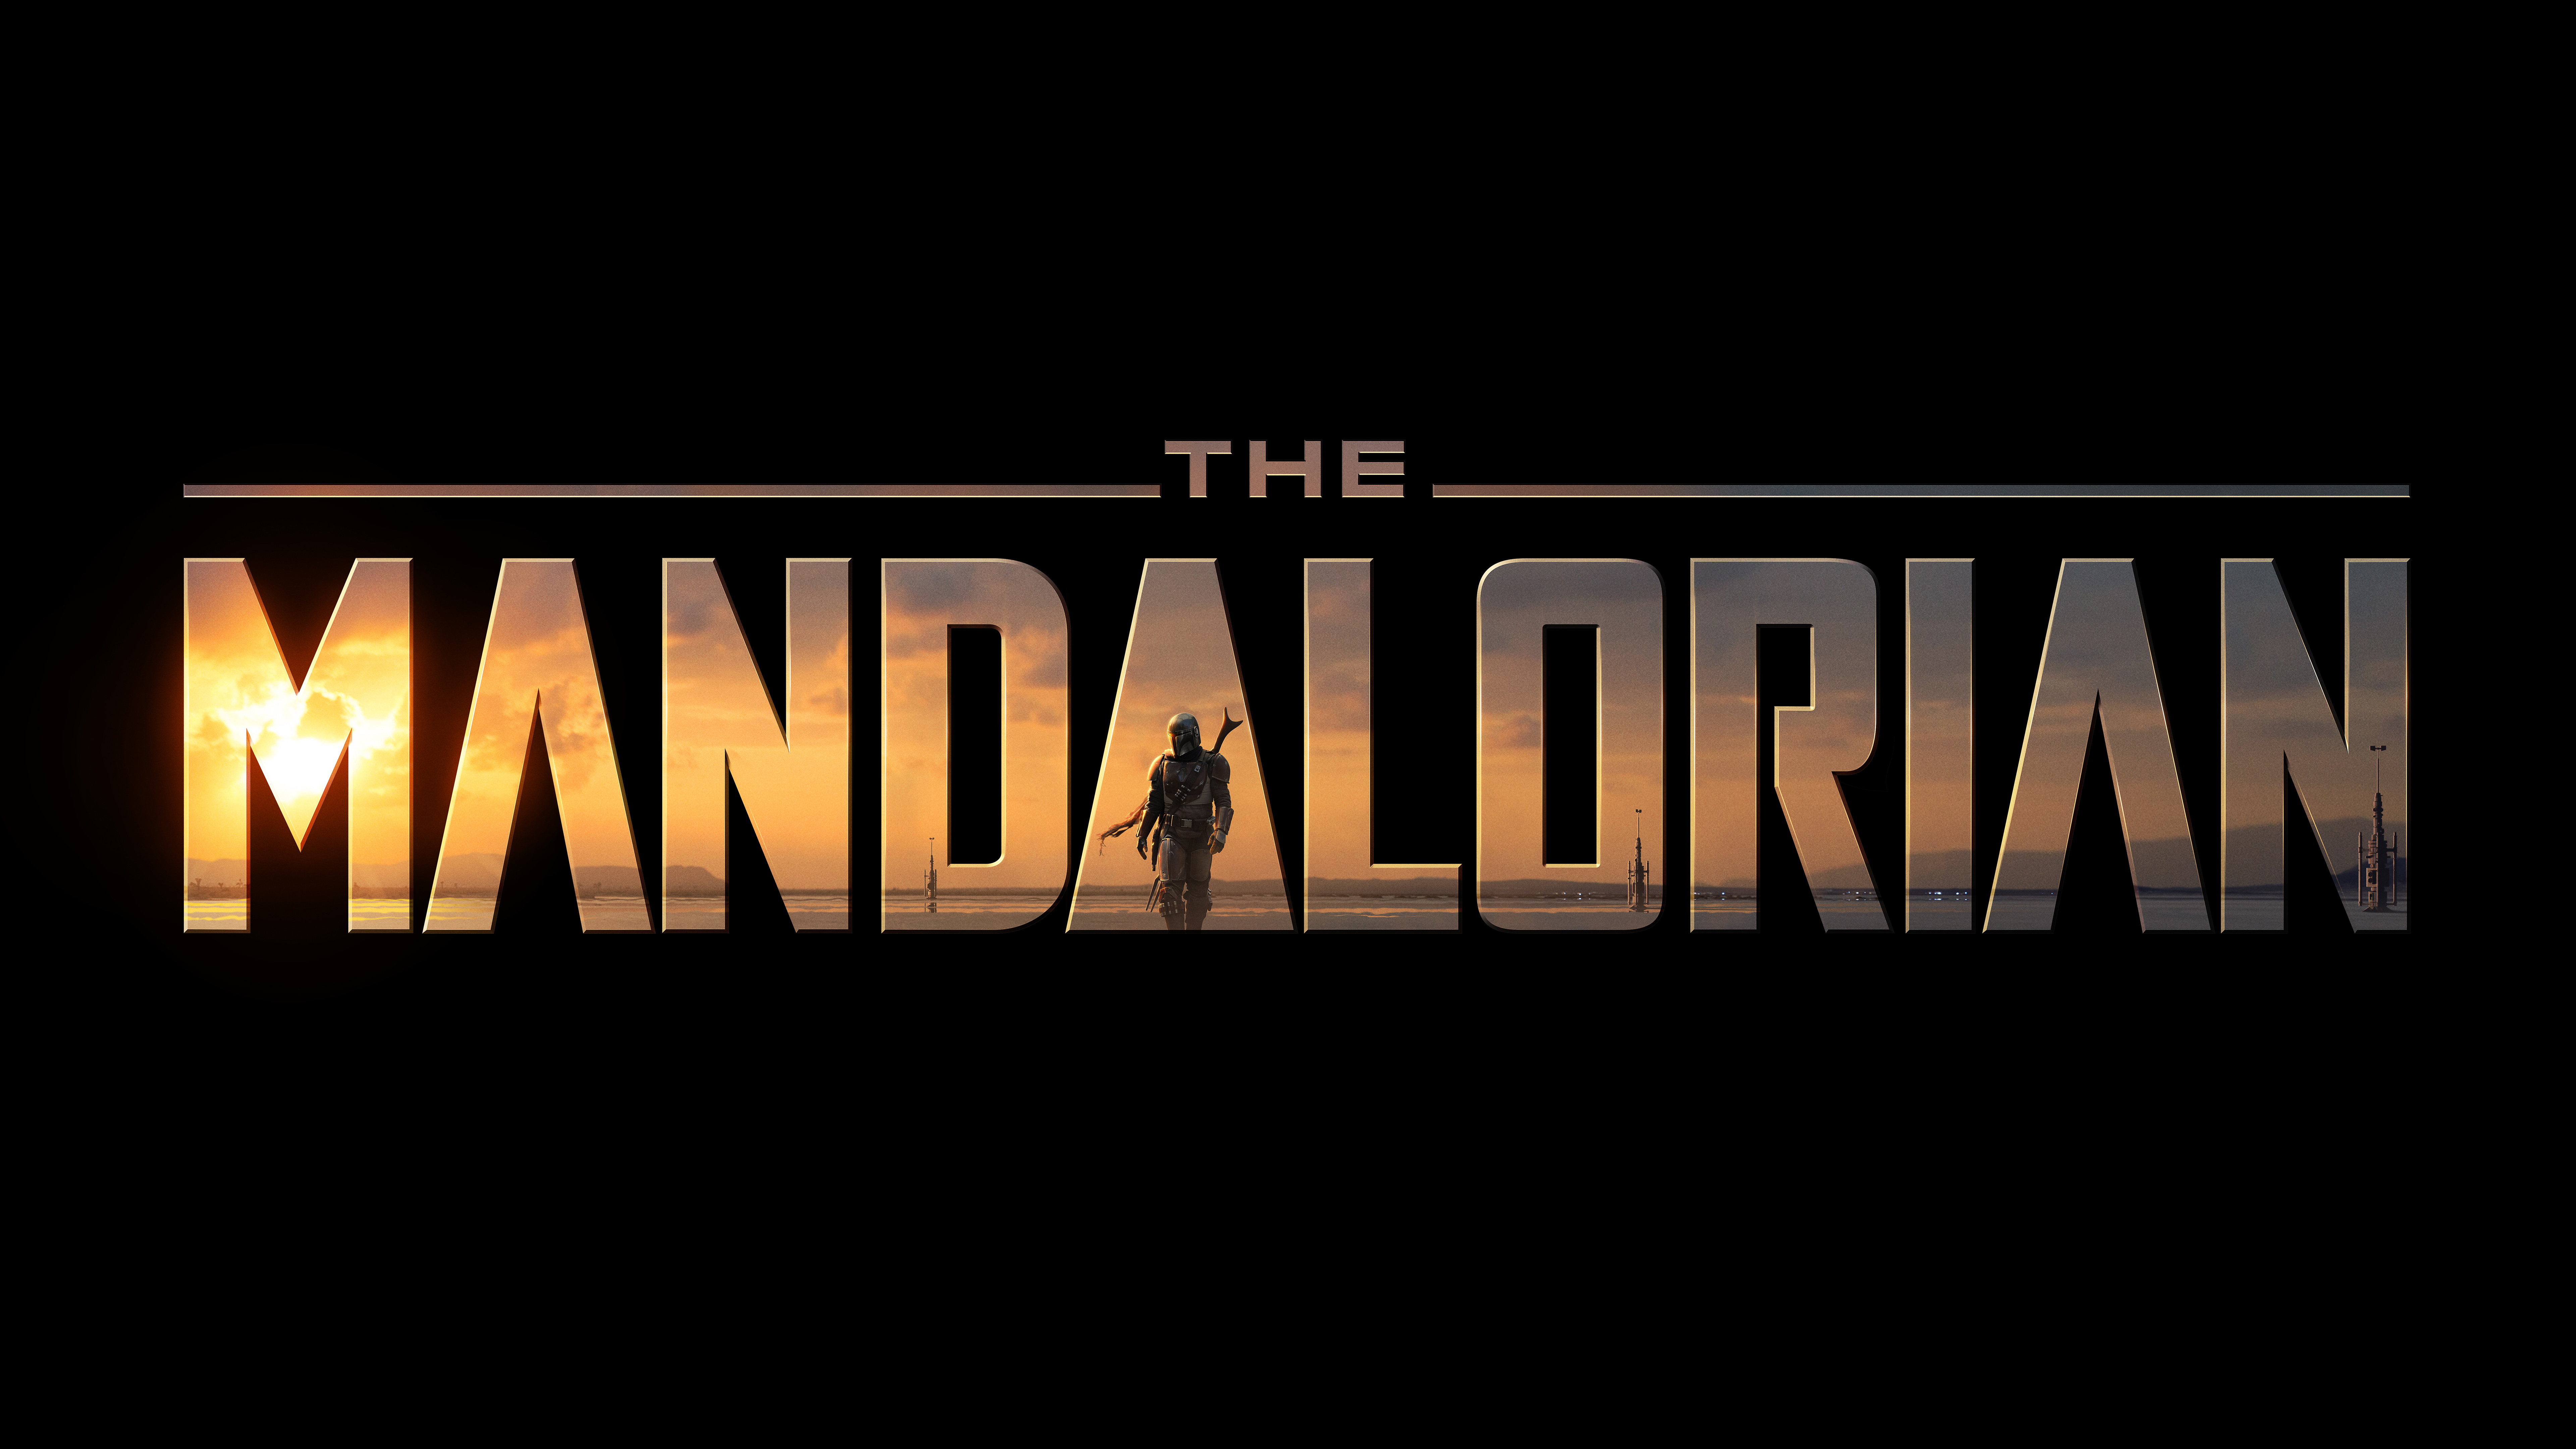 The Mandalorian TV Series 2019 4K 8K Wallpapers